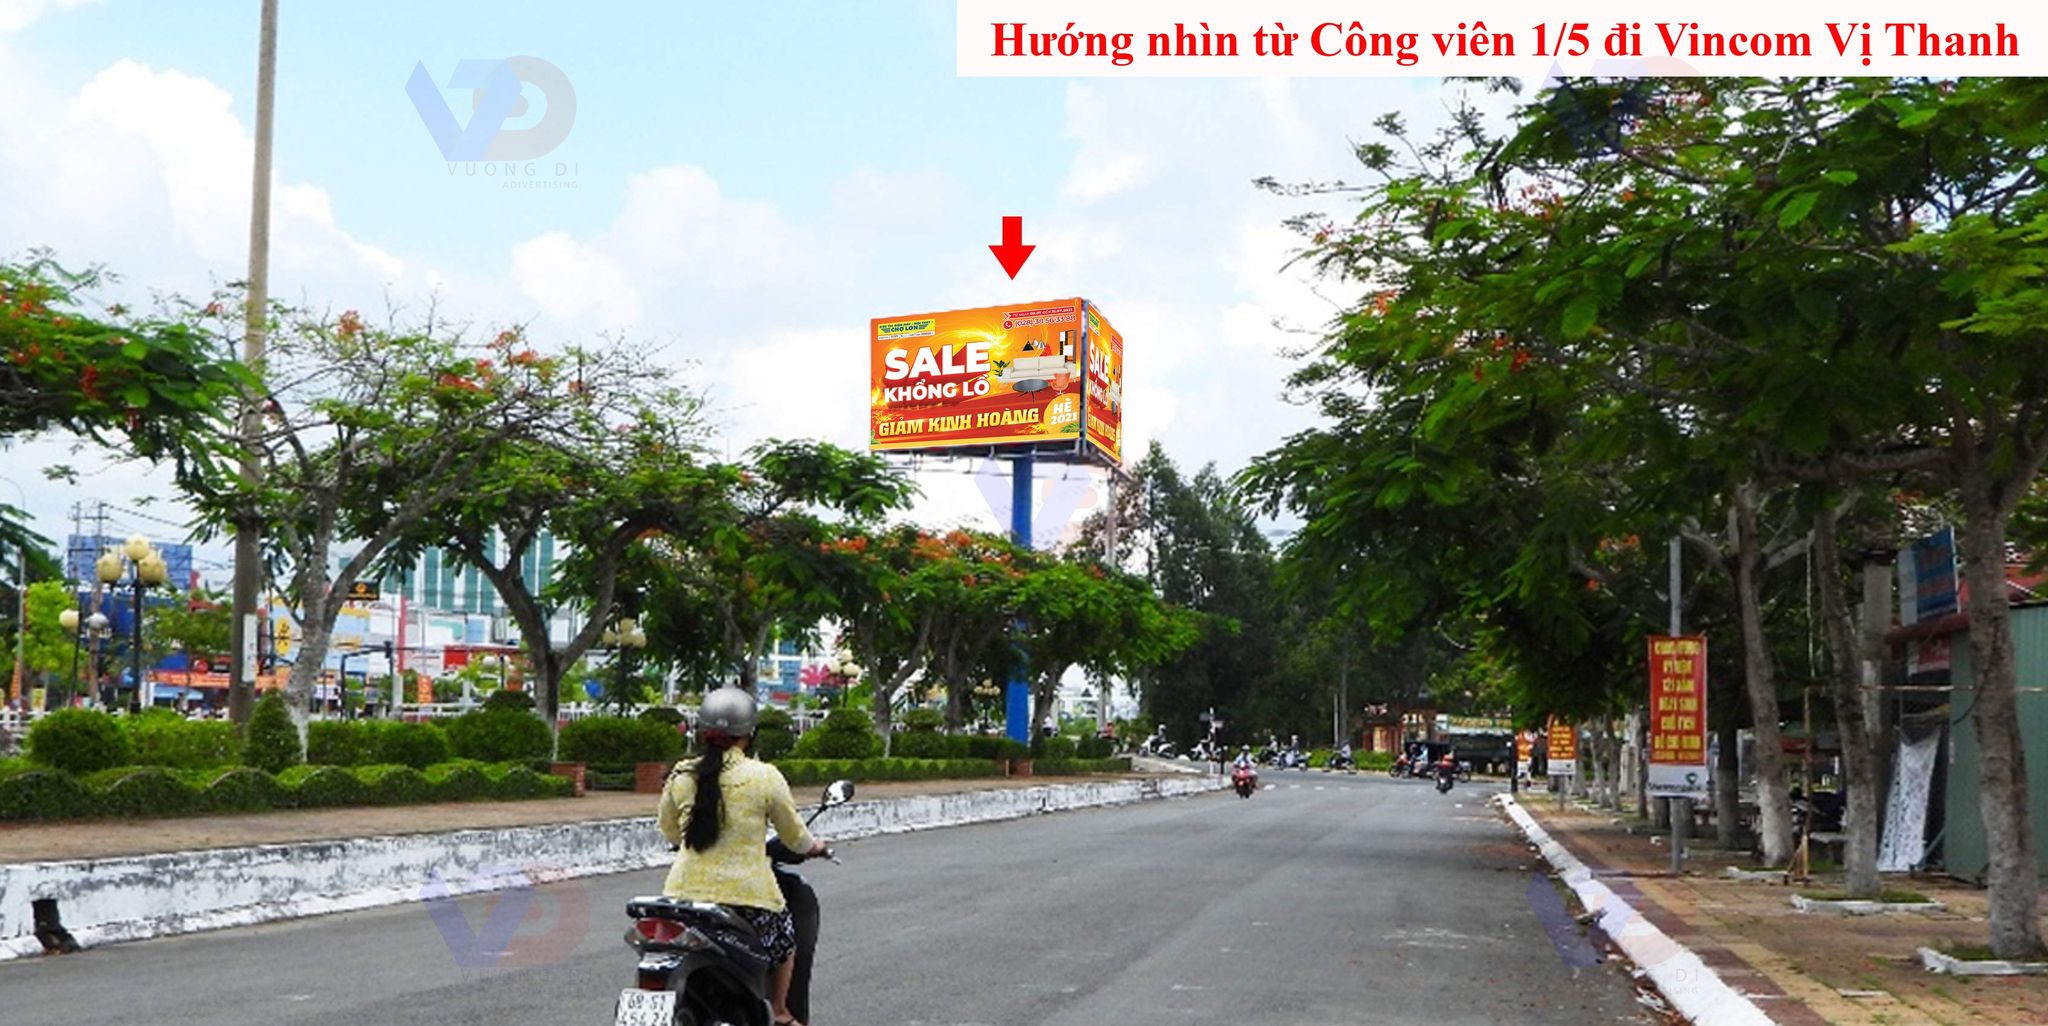 Bảng quảng cáo tại Ngã 3 Nguyễn Công Trứ - 1/5, TP Vị Thanh, Hậu Giang